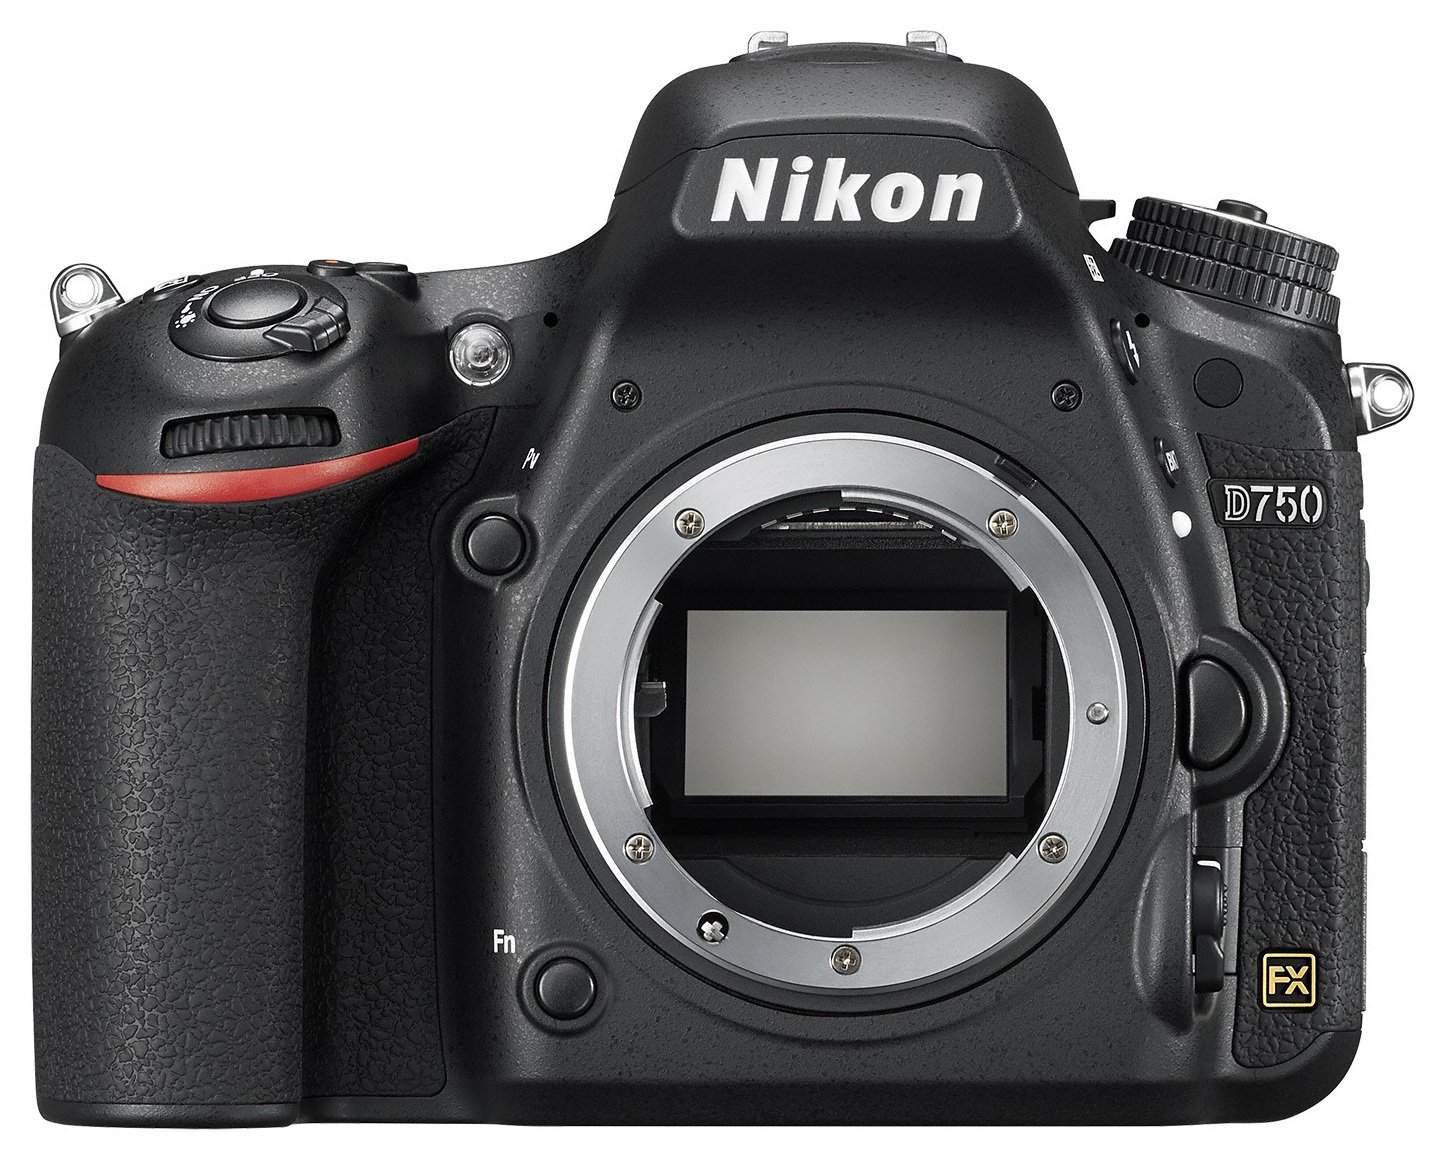 Nikon D750 DSLR Camera Body Review